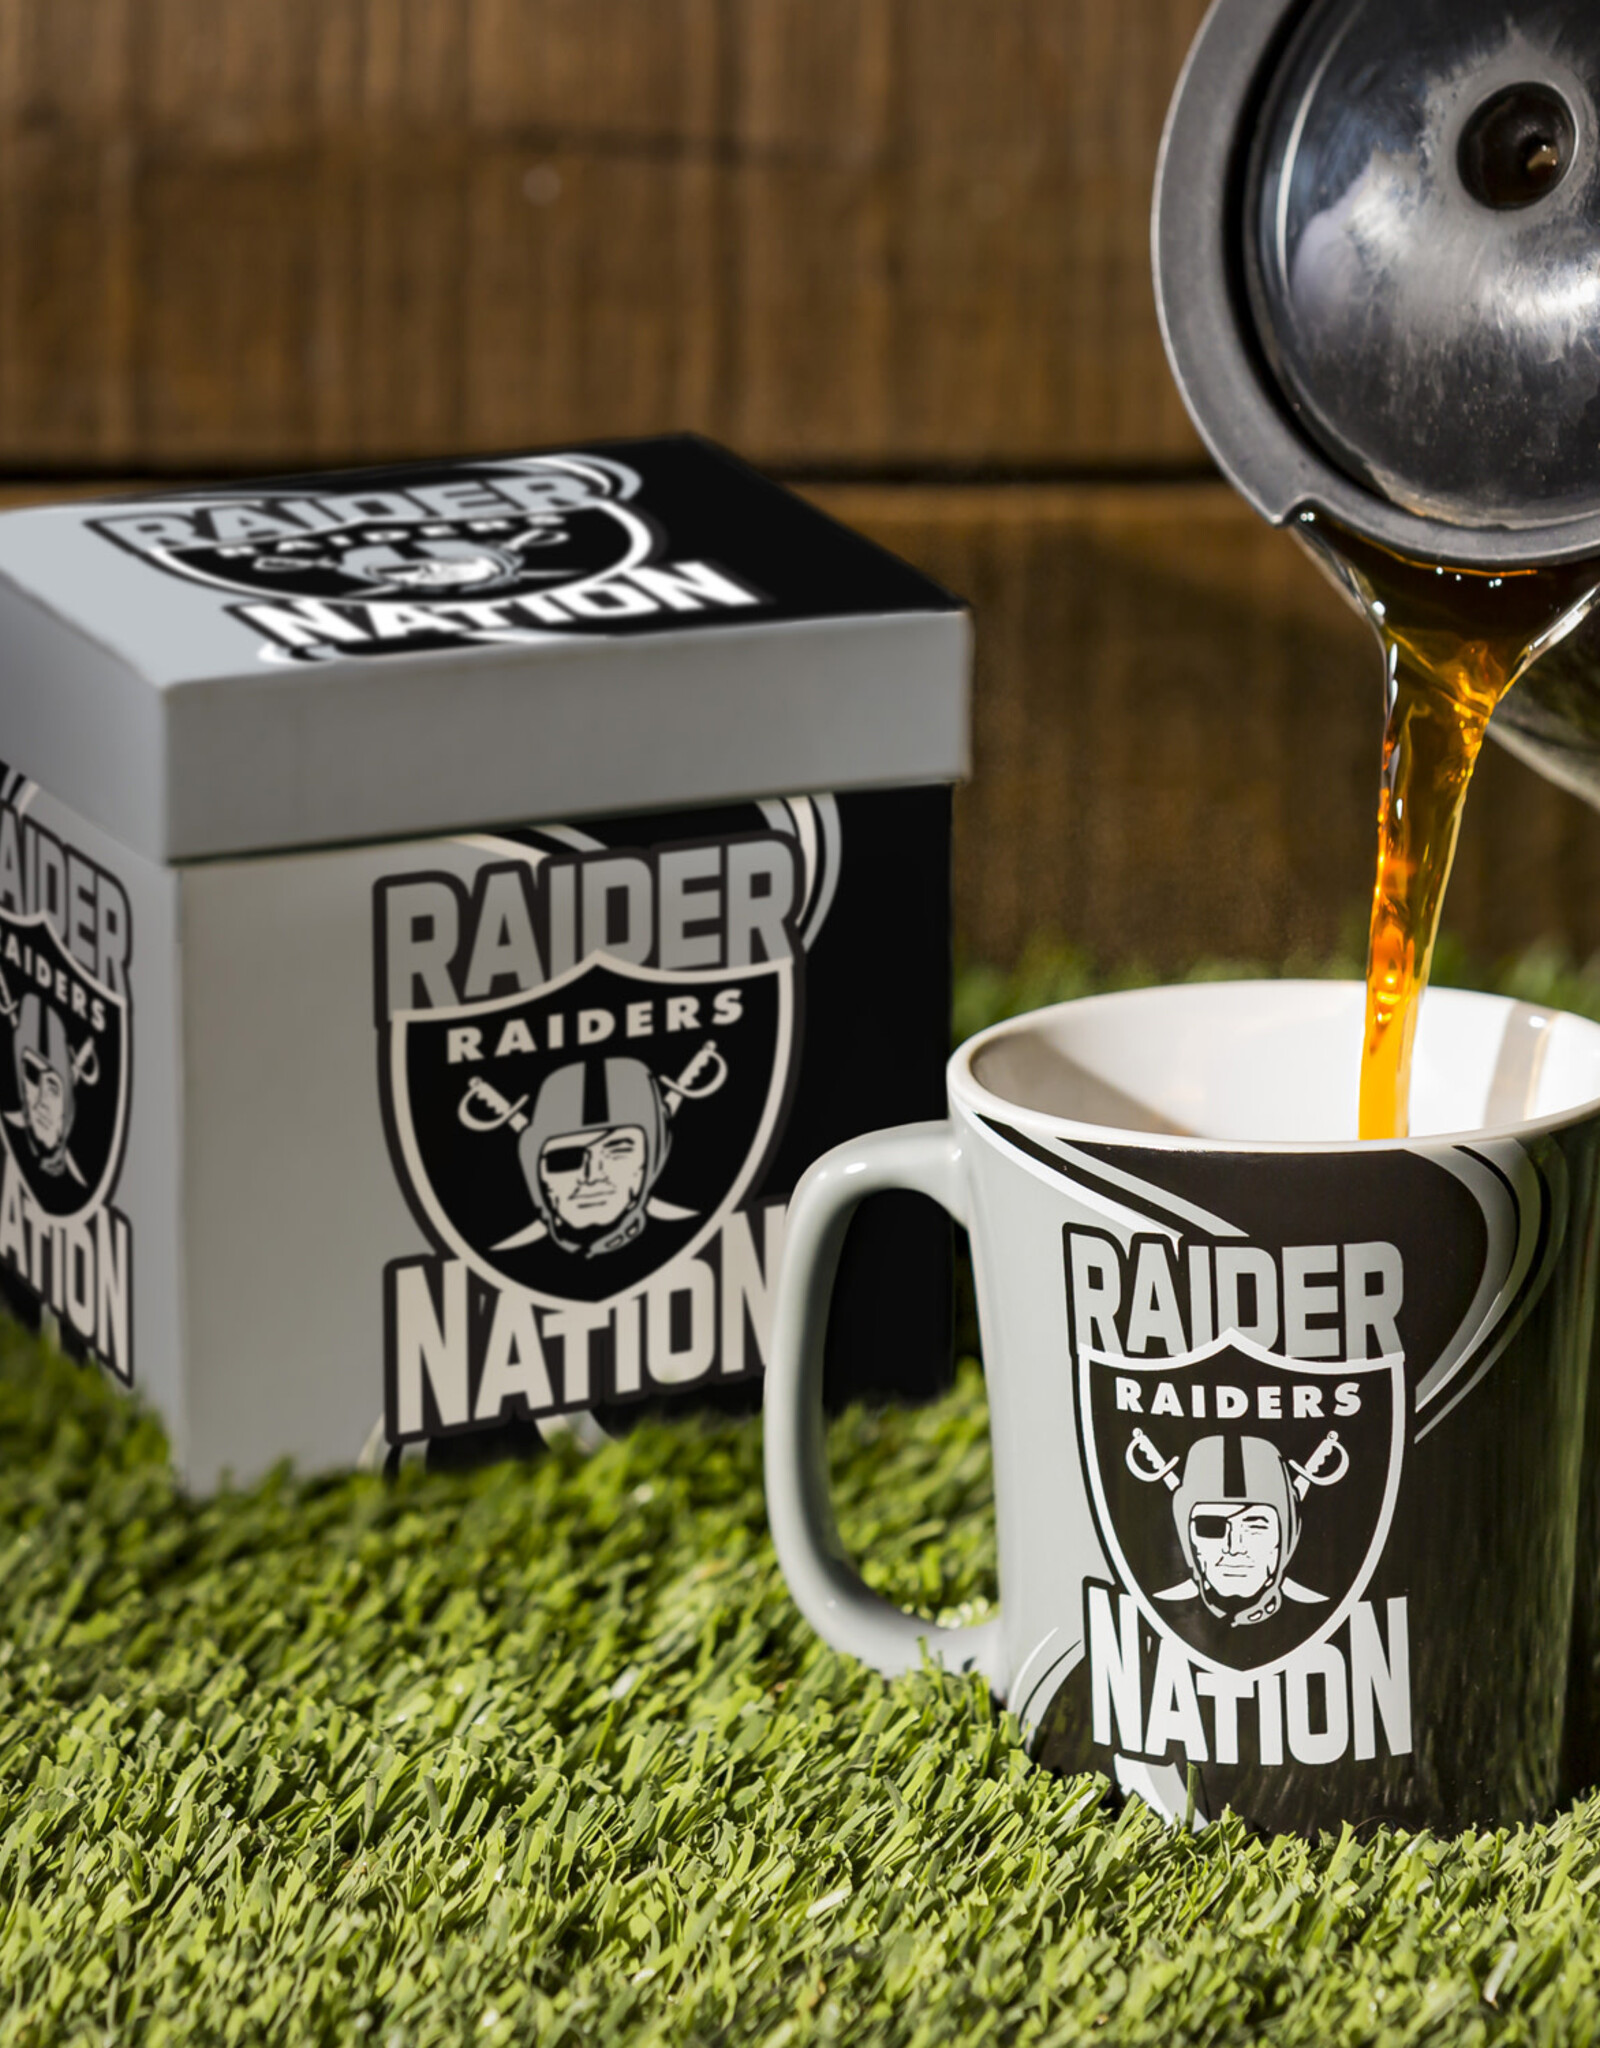 EVERGREEN Las Vegas Raiders 14oz Gift Boxed Mug